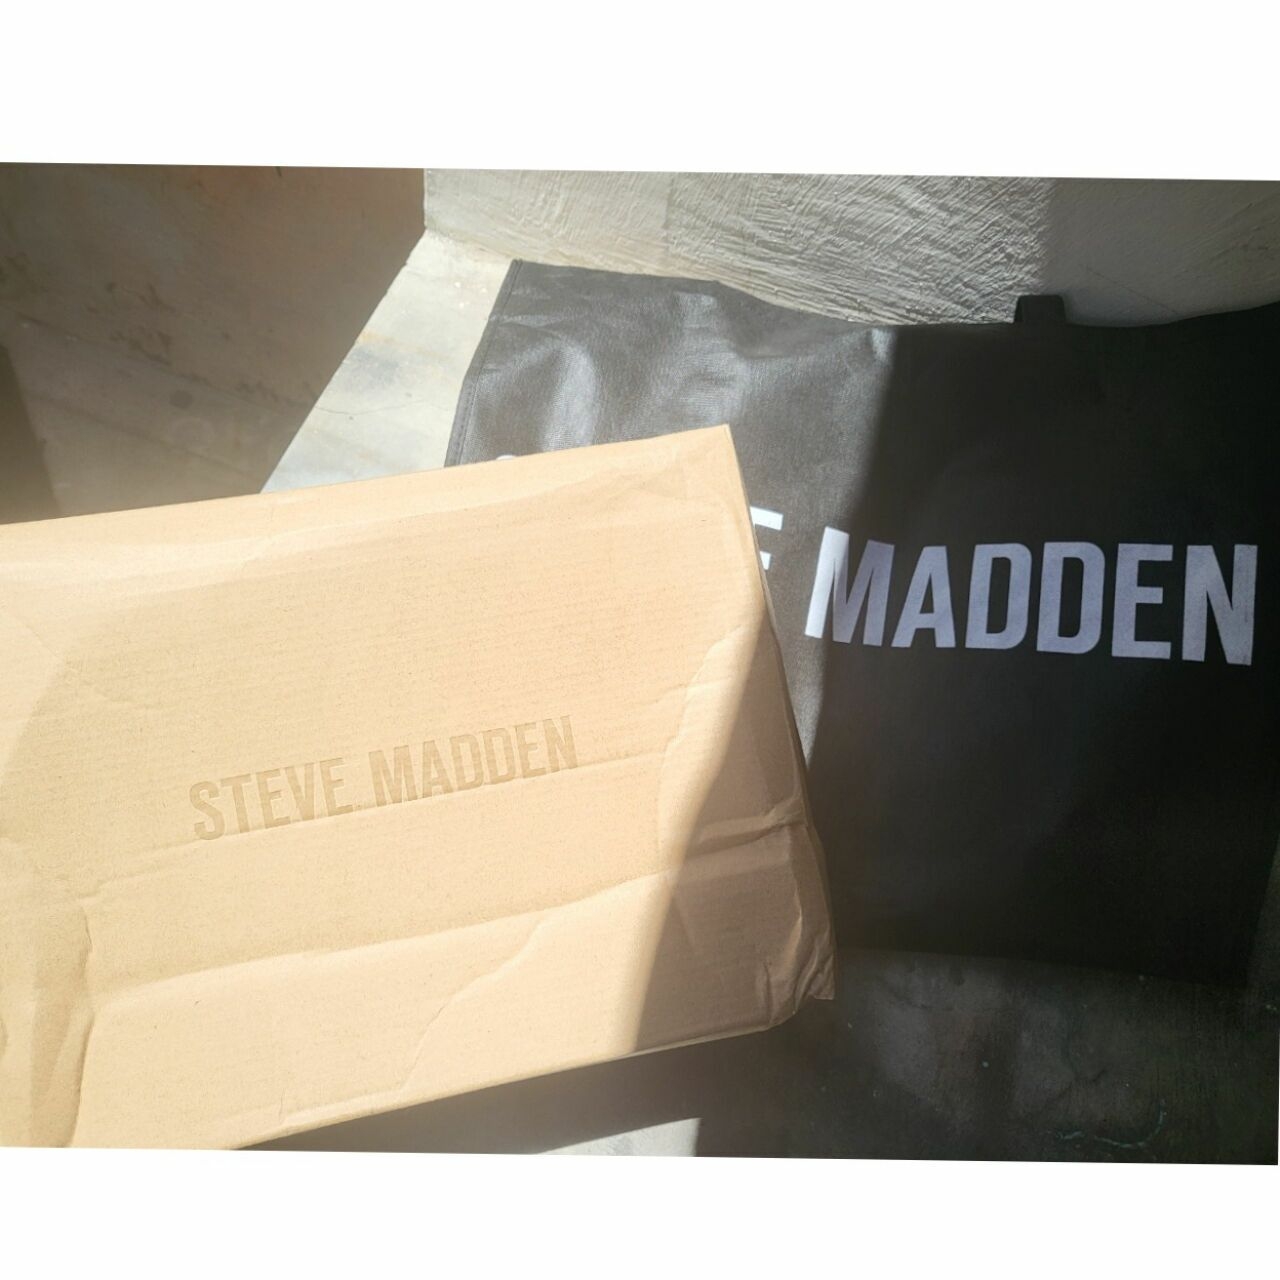 Steve Madden Blue & Pink Sneaker